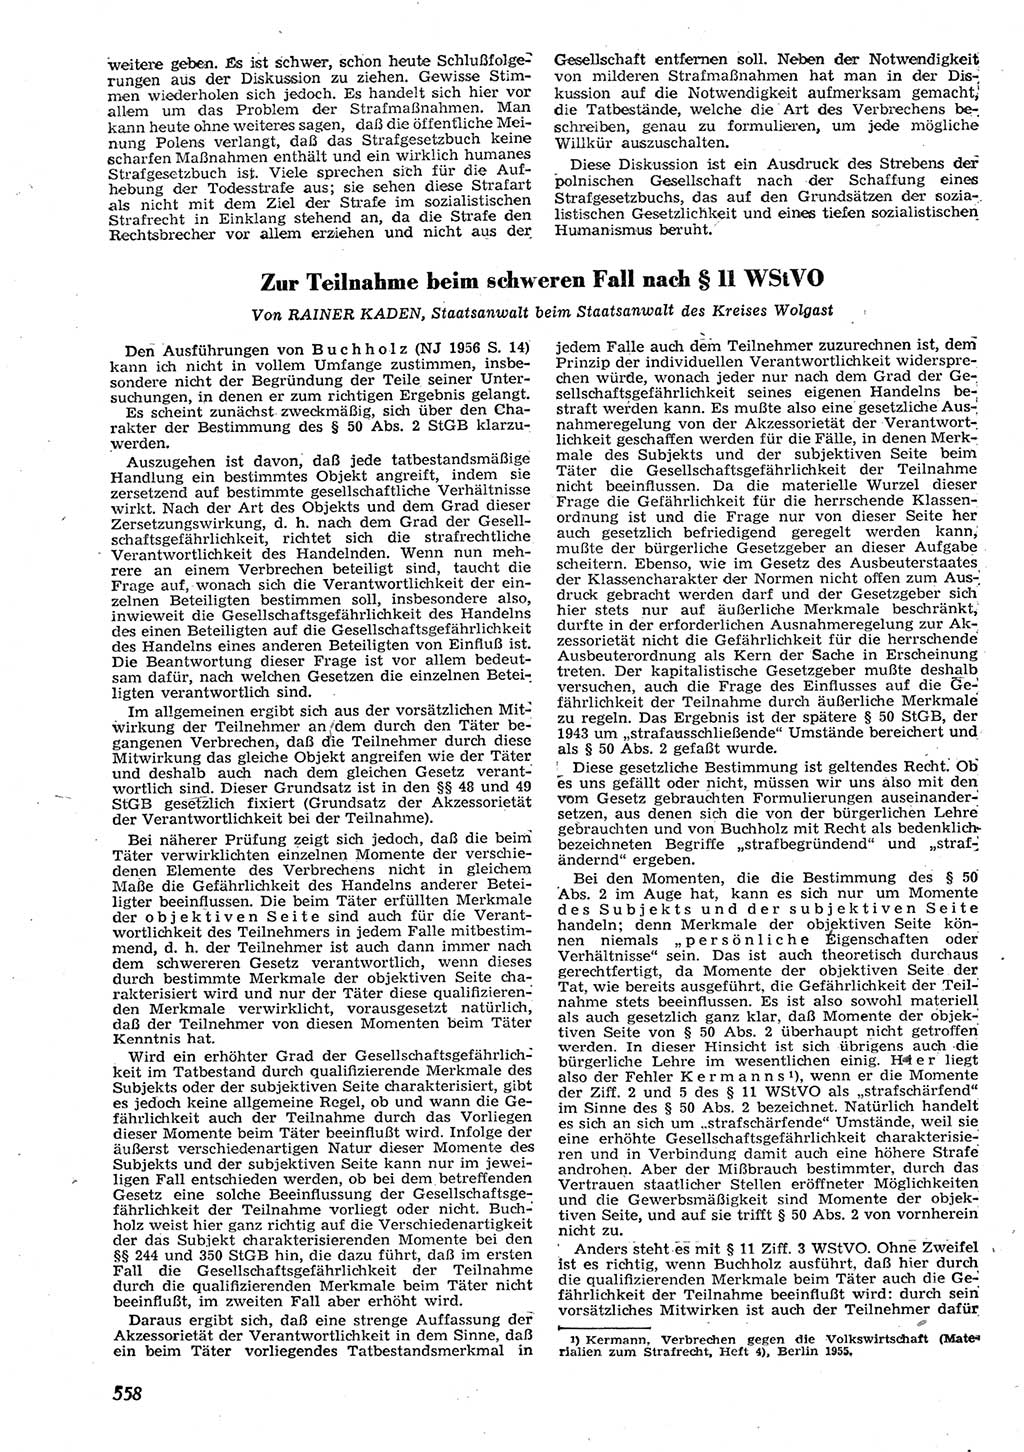 Neue Justiz (NJ), Zeitschrift für Recht und Rechtswissenschaft [Deutsche Demokratische Republik (DDR)], 10. Jahrgang 1956, Seite 558 (NJ DDR 1956, S. 558)